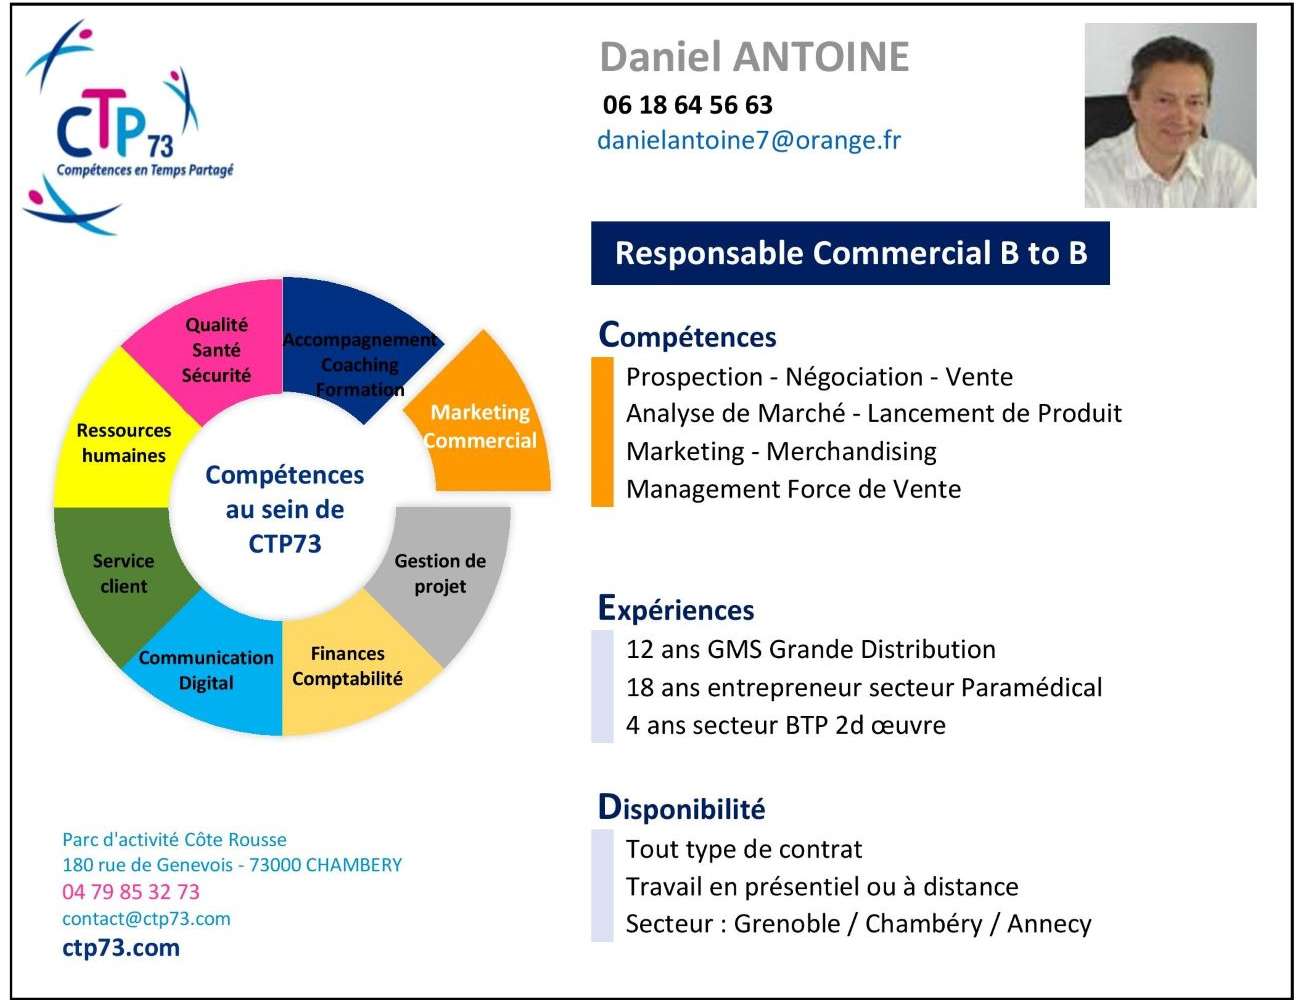 201202_CTP73 Offre compétences Daniel Antoine 3